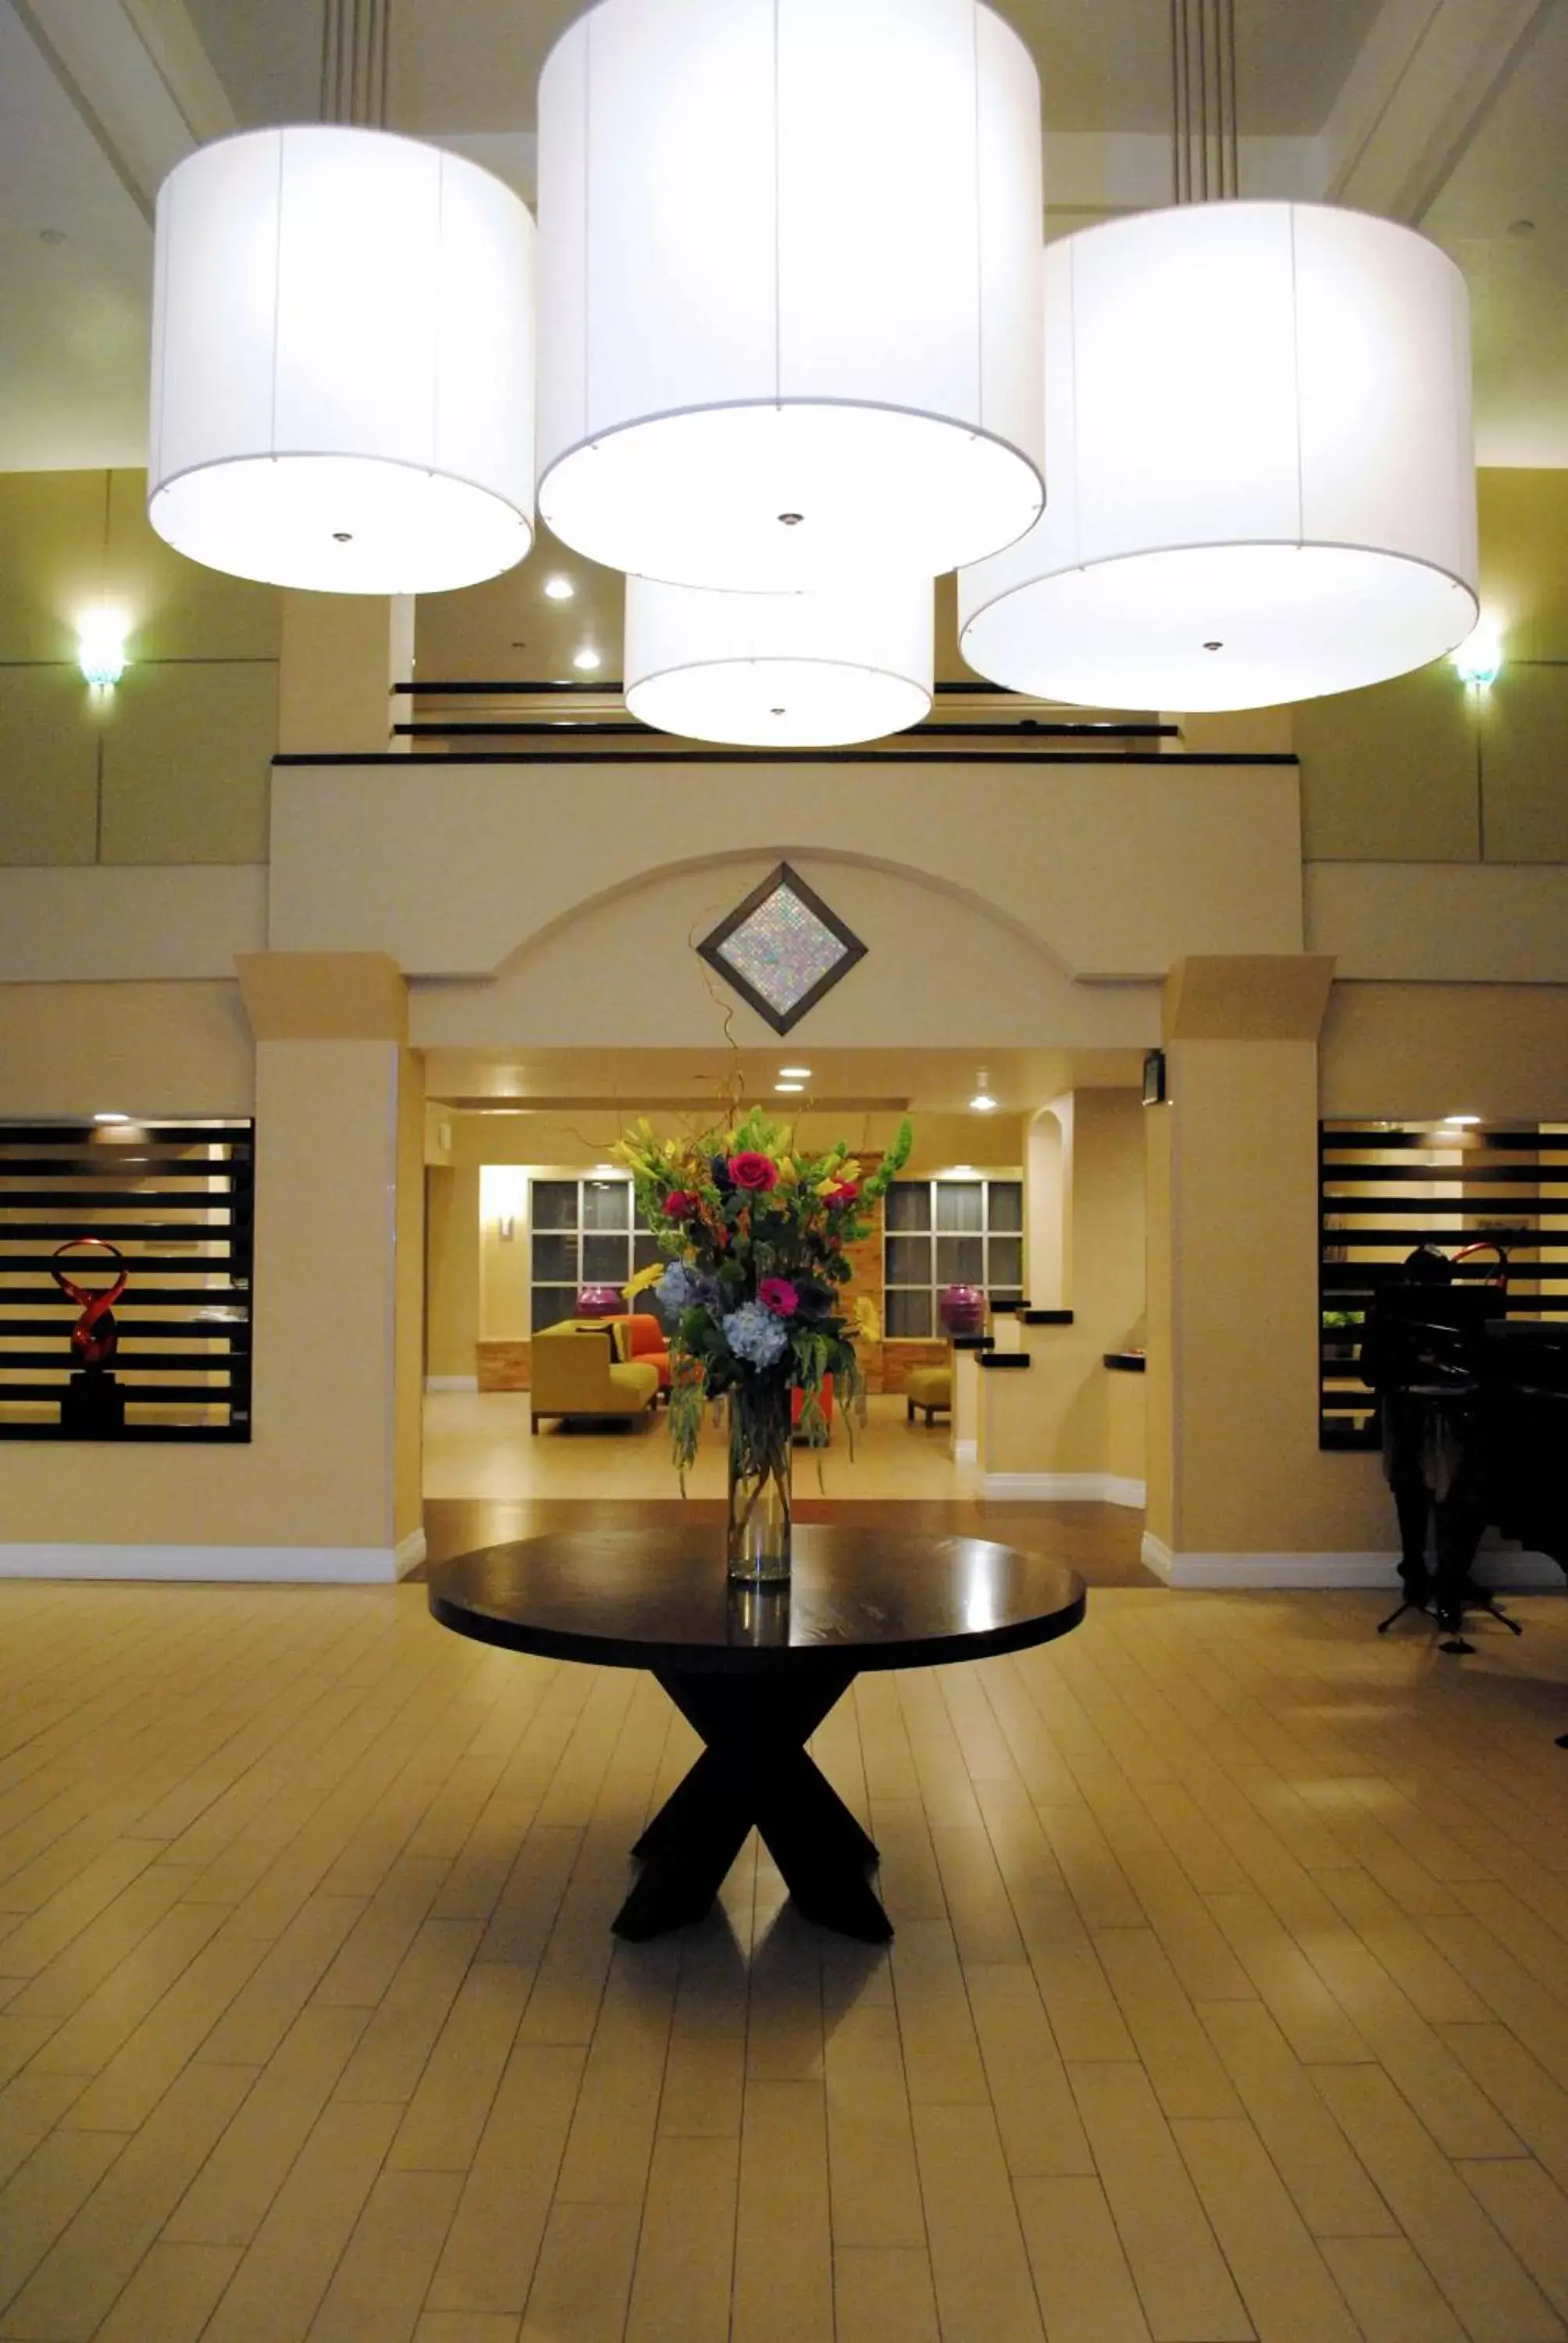 Lobby or reception, Lobby/Reception in Radisson Hotel Chatsworth